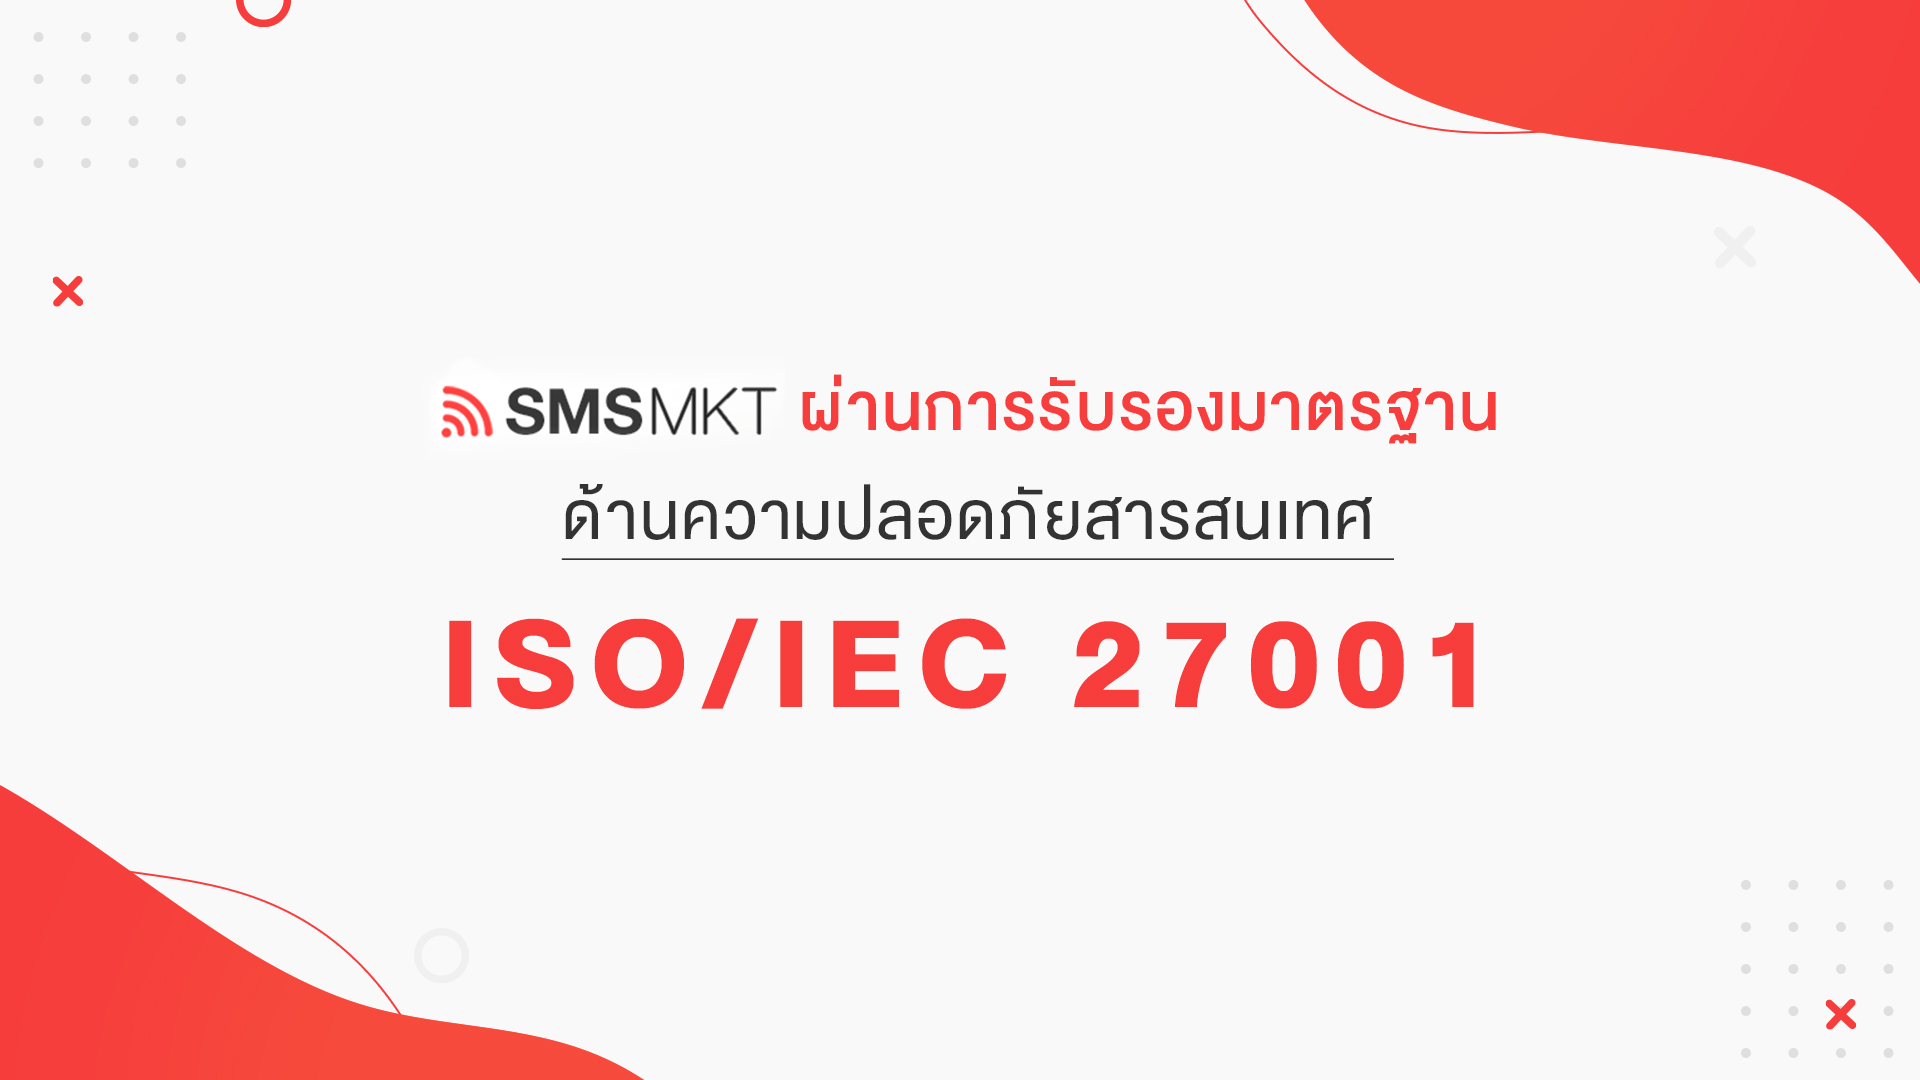 blog SMSMKT ผ่านการรับรองมาตรฐานด้านความปลอดภัยสารสนเทศ ISO/IEC 27001